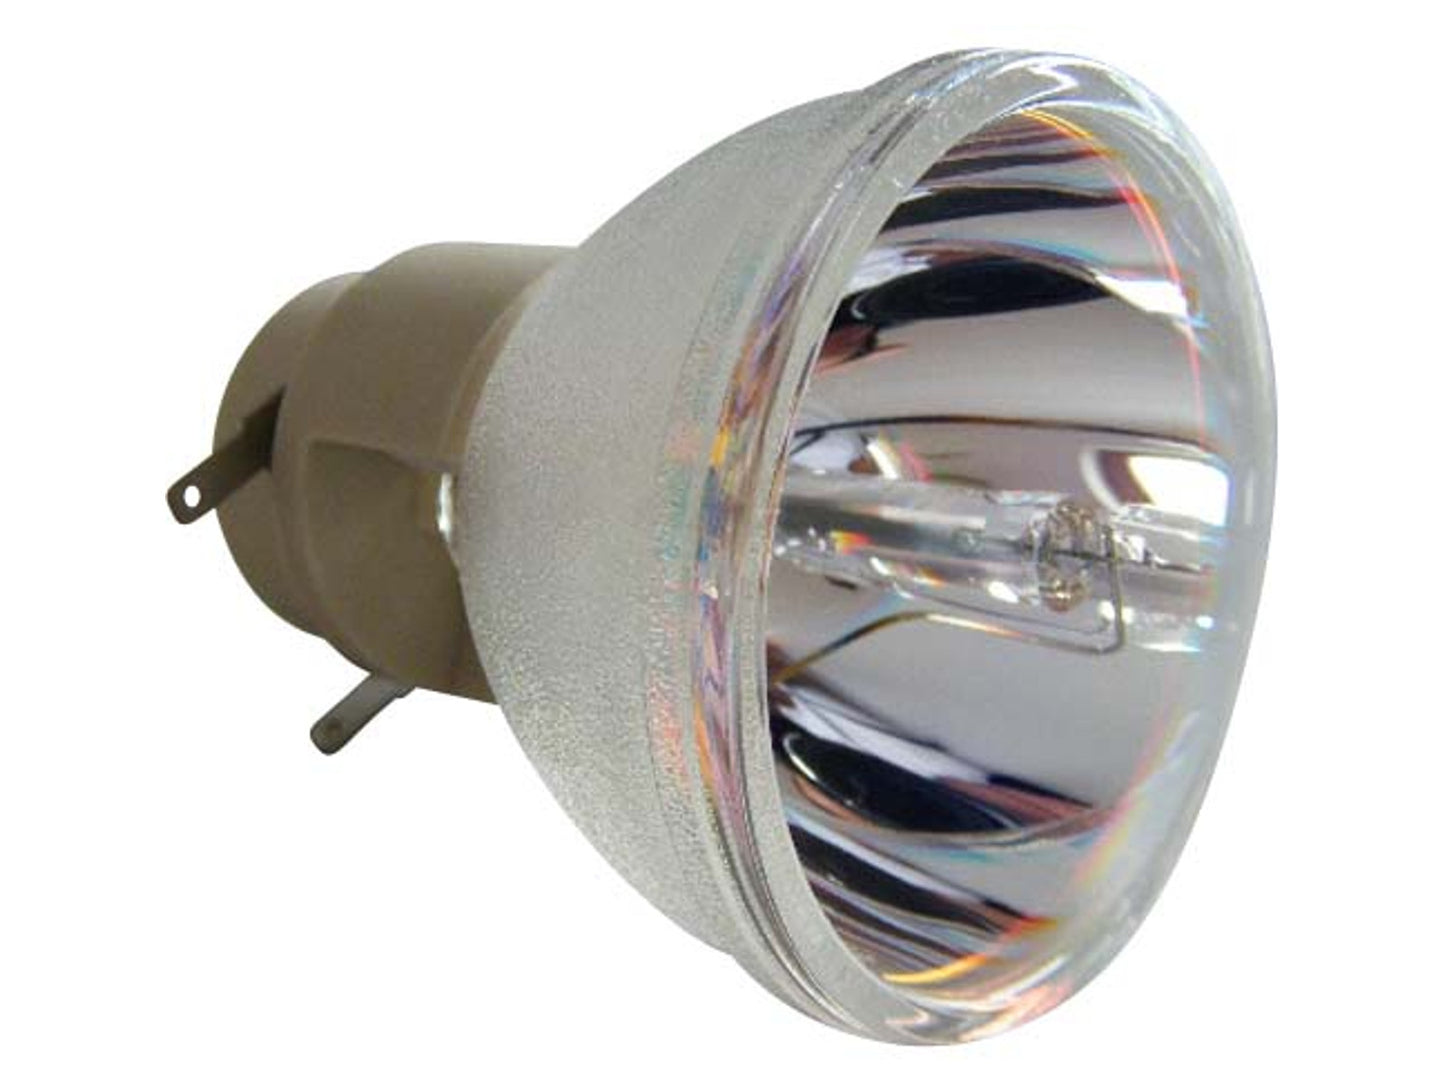 OSRAM Ersatzlampe P-VIP 230/0.8 E20.8 | Beamerlampe für diverse Projektoren - Bild 1